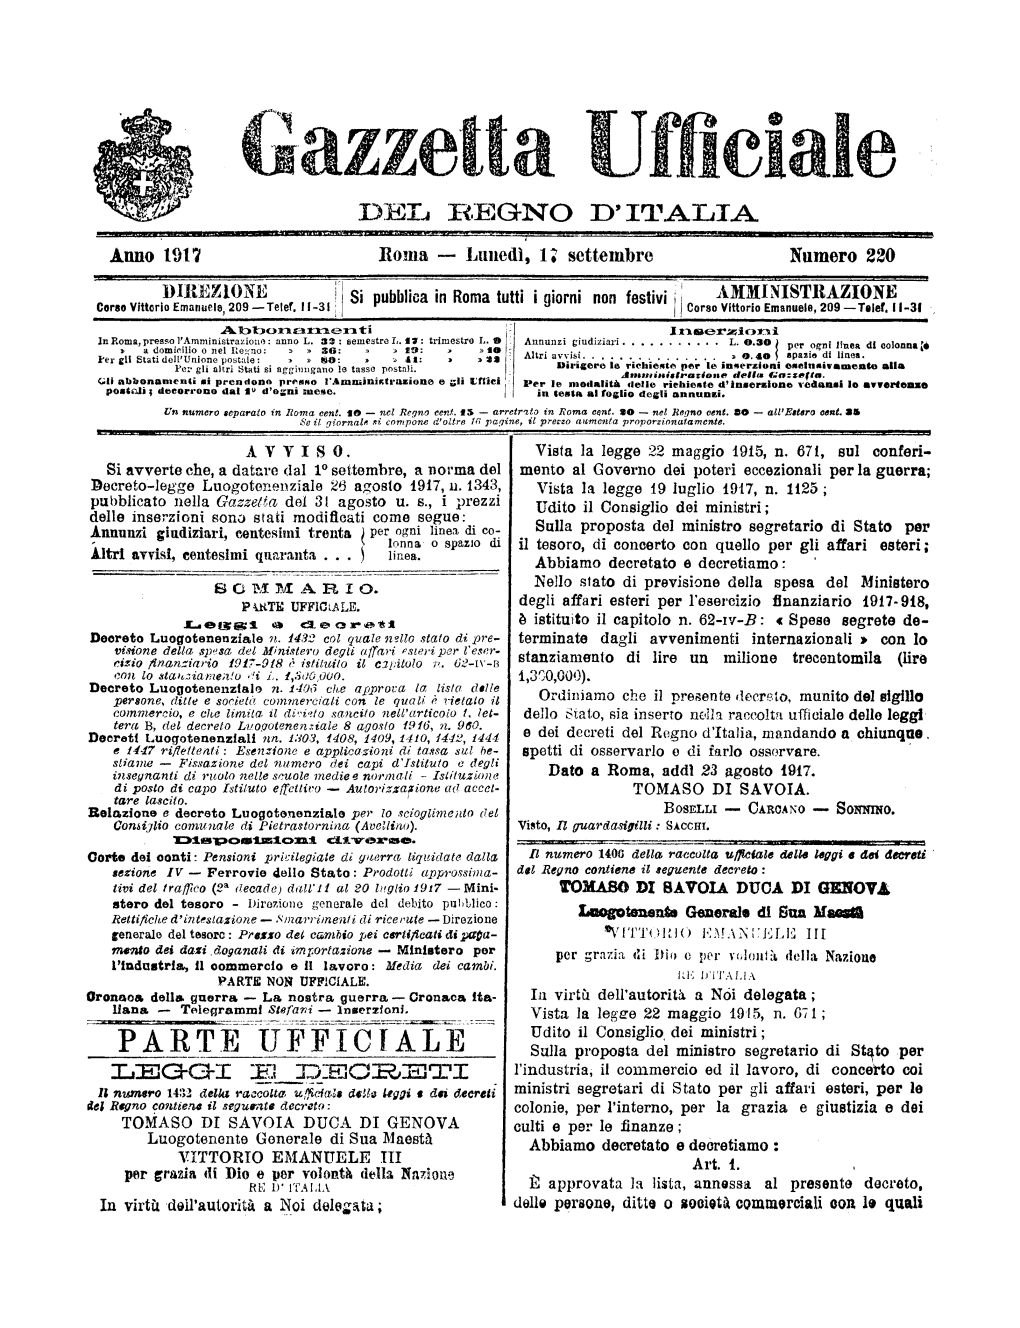 Gazzetta Ufficiale Del Regno D'italia N. 220 Del 17 Settembre 1917 Parte Ufficiale E Parte Non Ufficiale